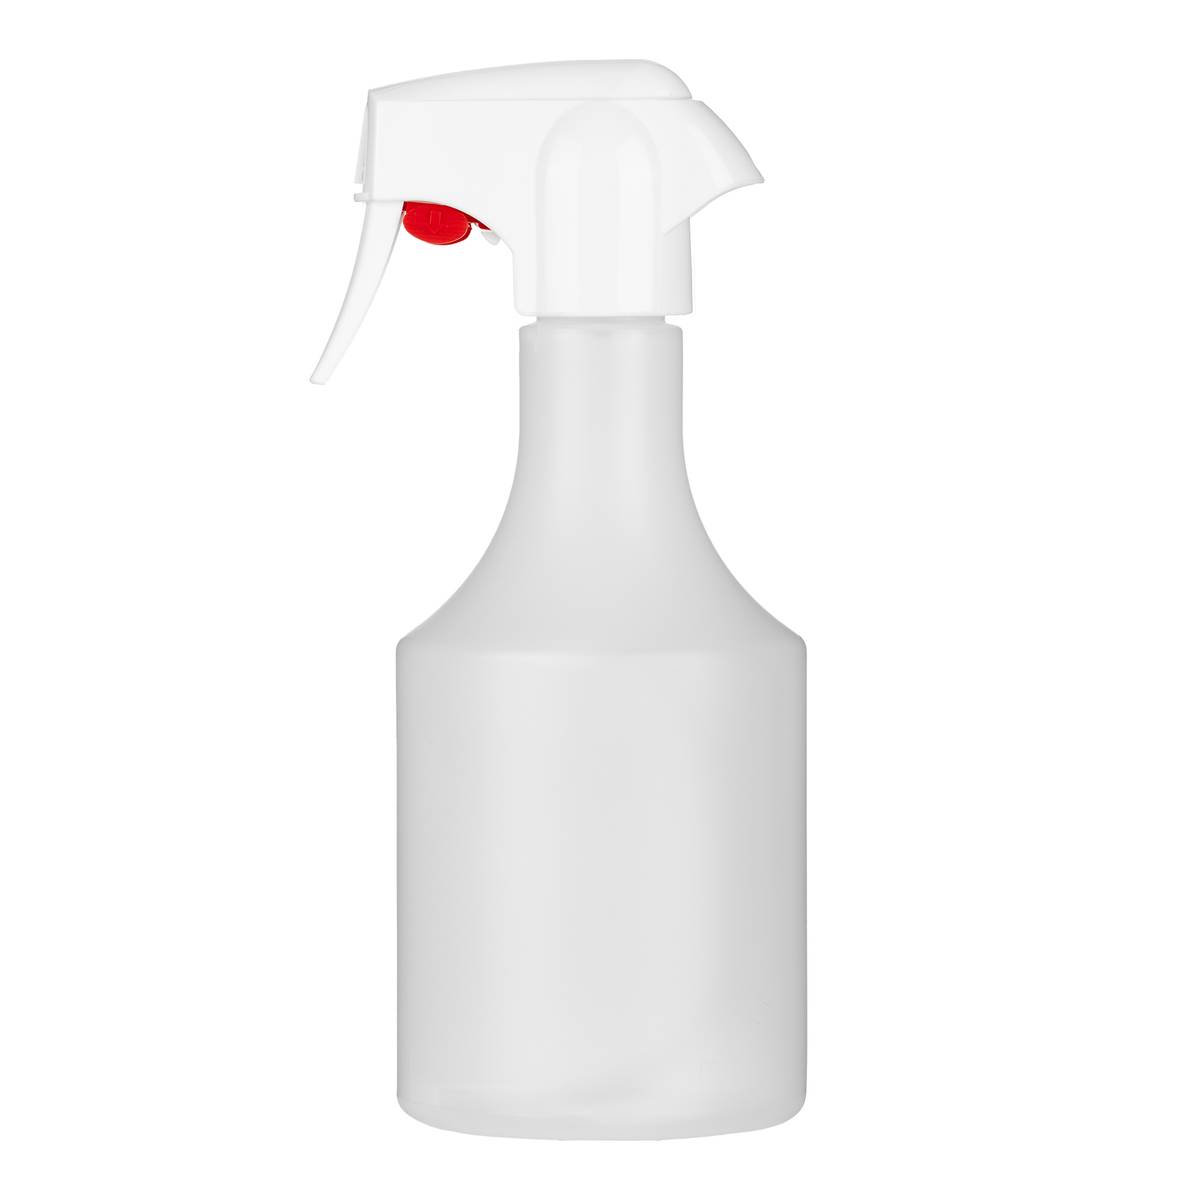 Kunststoff-Systemflasche rund 500 ml mit Pump-Sprühkopf mit Kindersicherung (KiSi) - CLEANPRODUCTS